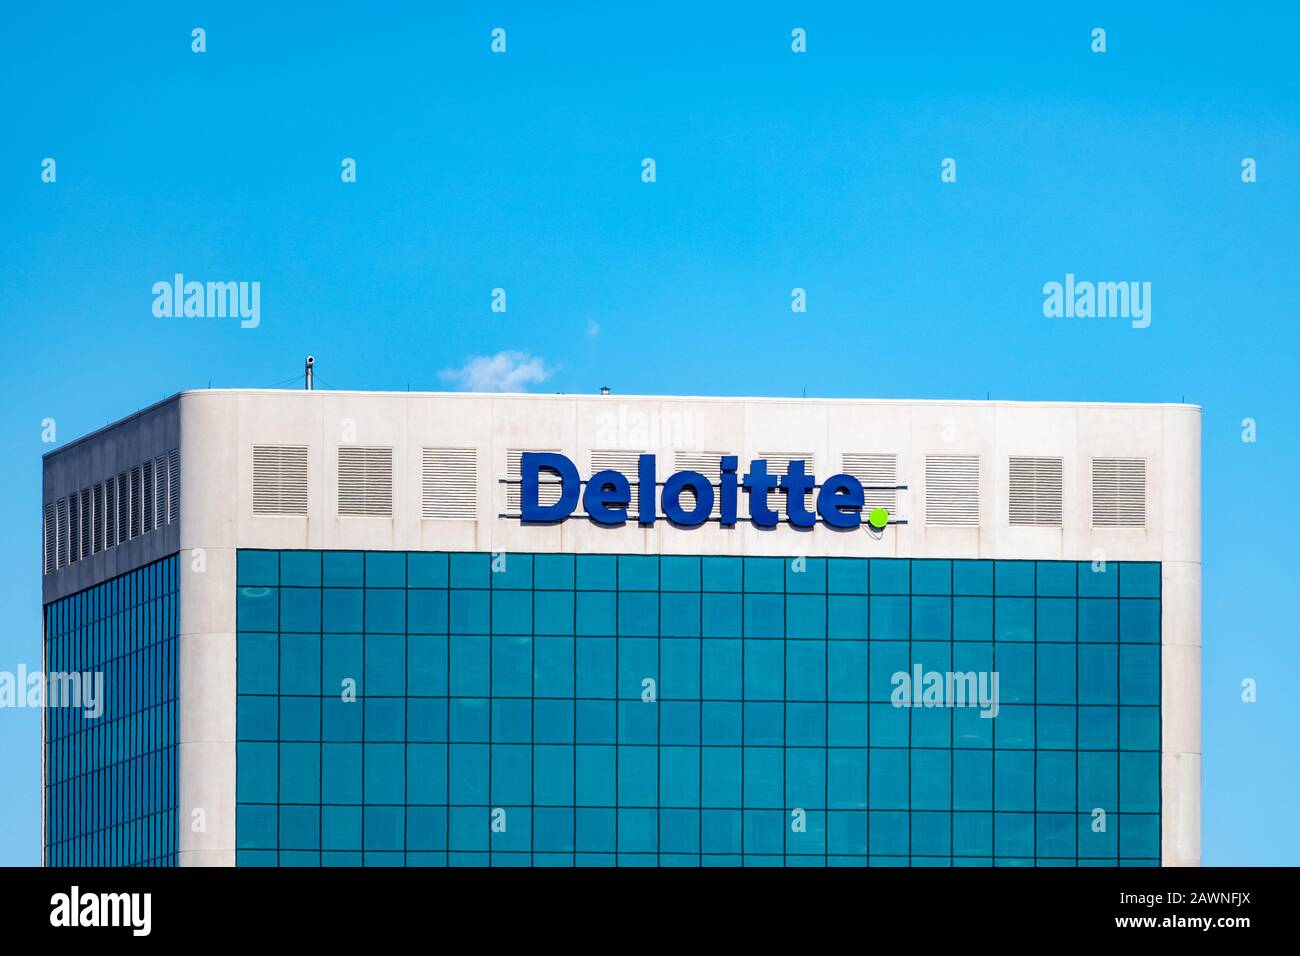 Gli uffici di Deloitte Canada al 515 Legget Drive nella zona nord di Ottawa Kanata. Deloitte è un'organizzazione di servizi professionali e contabili a livello globale Foto Stock